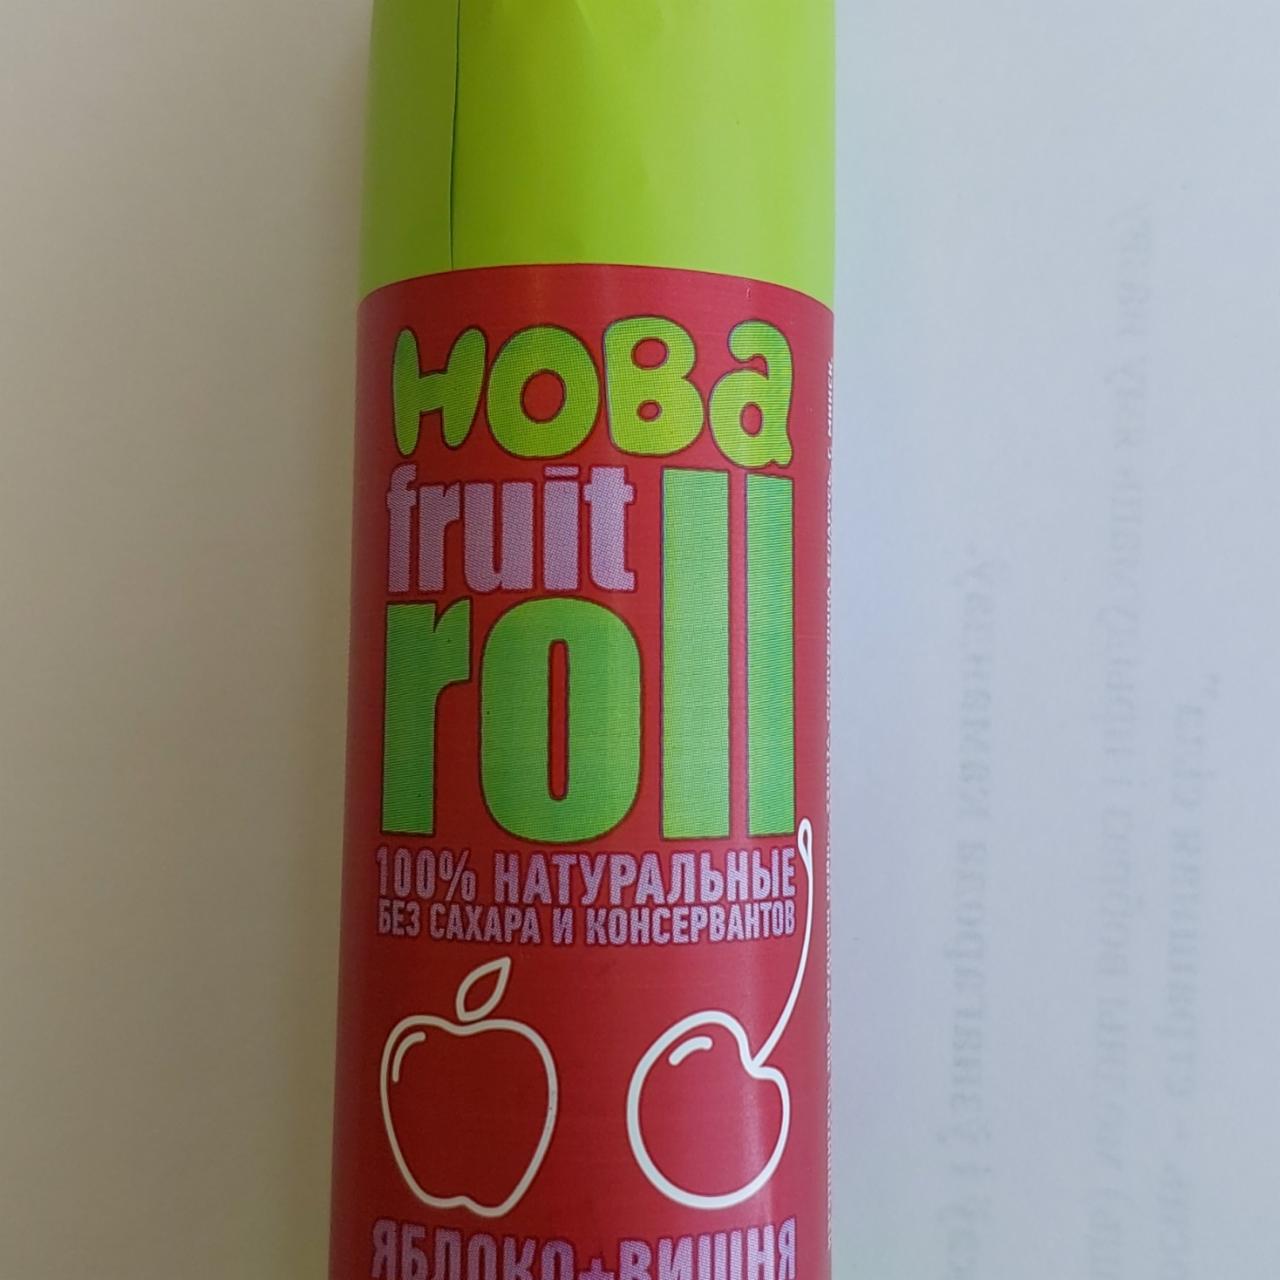 Фото - Конфеты фруктово-ягодные яблоко вишня fruit roll 100% Hoba Хоба